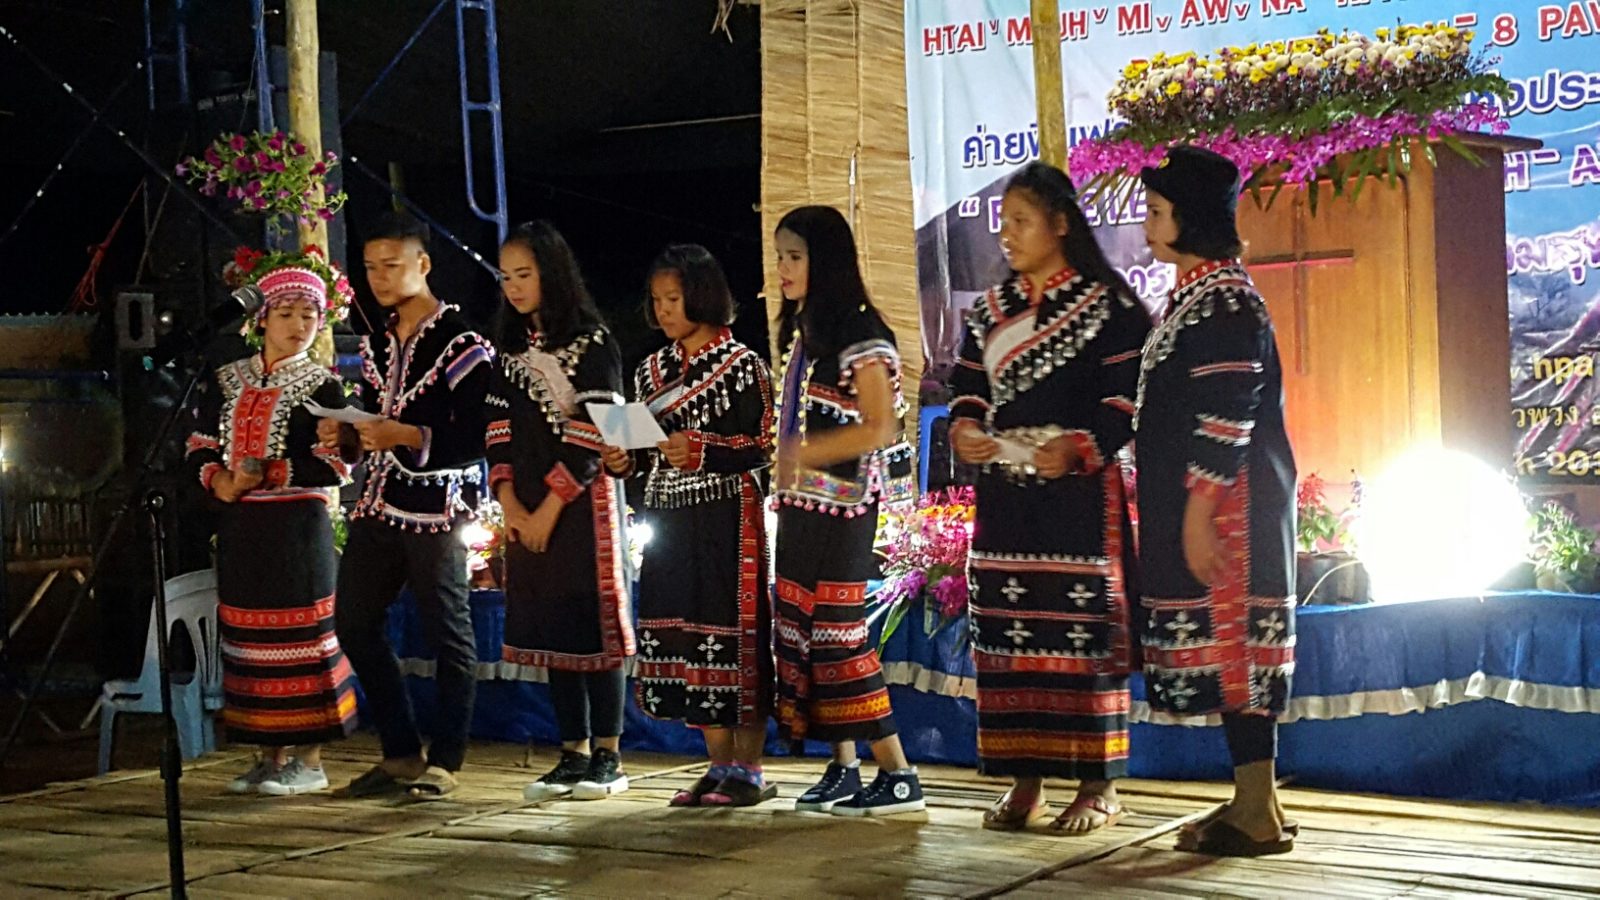 Lahu singers in their costumes.